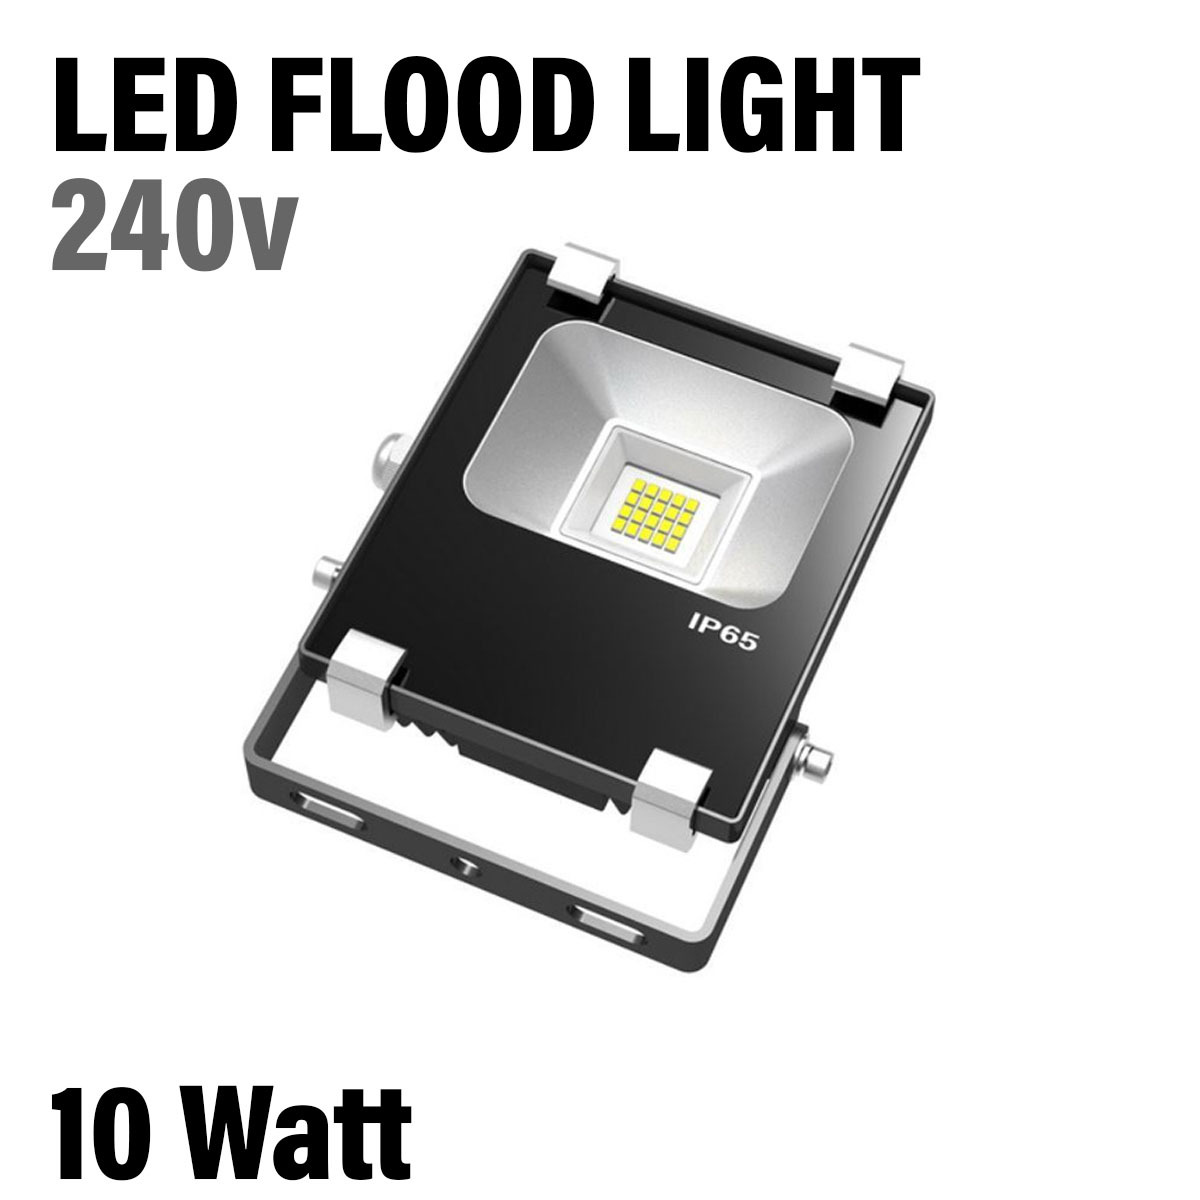 10 Watt LED Flood Light